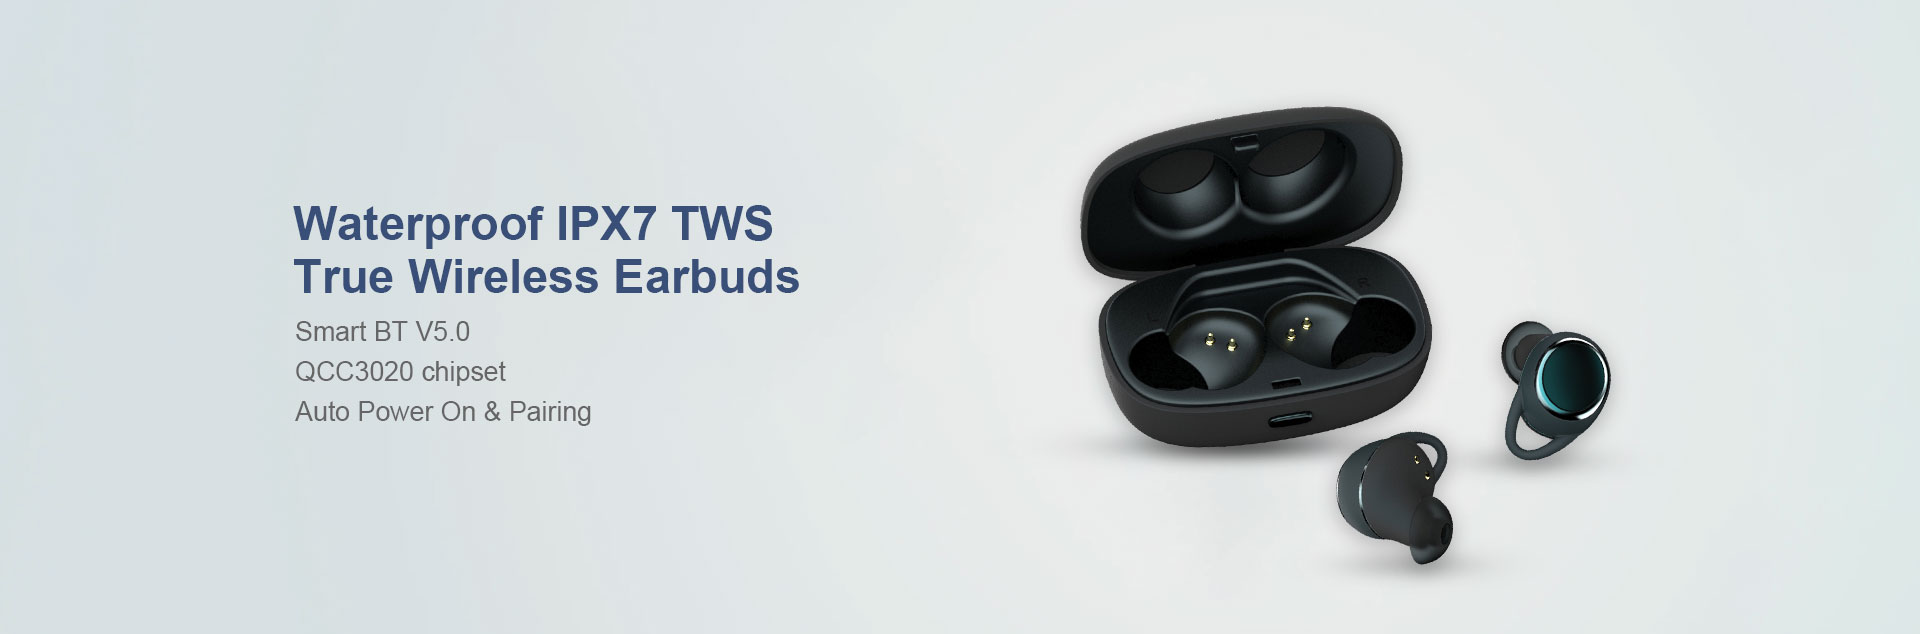 Waterproof IPX7 TWS True Wireless Earbuds AT188